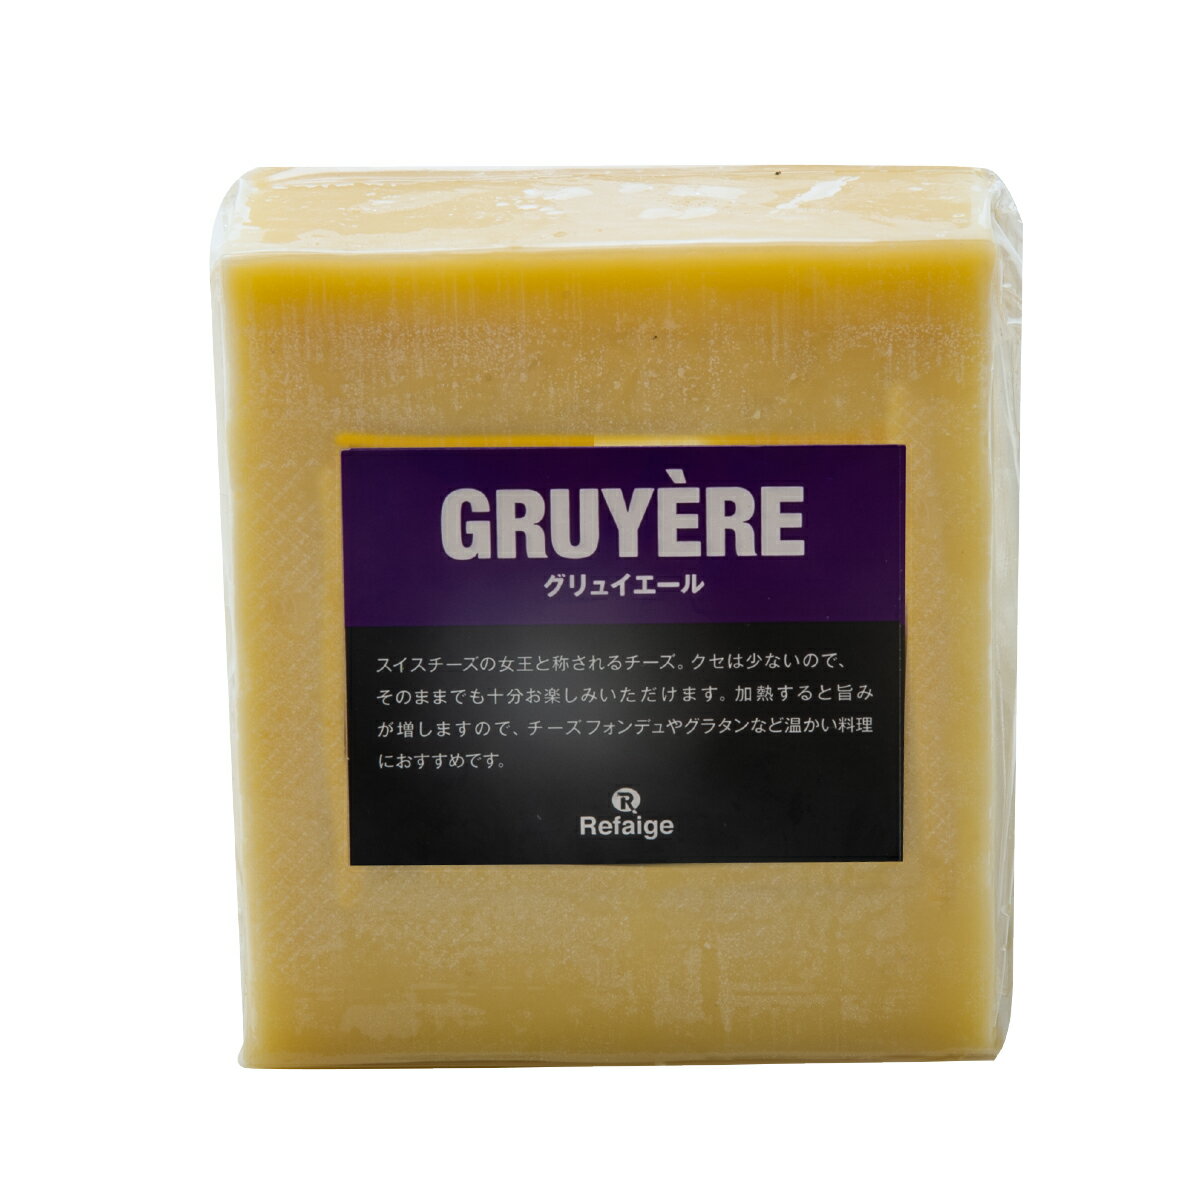 グリュイエール グリュイエールはスイスを代表するチーズの一つで、EUのAOP認定チーズです。大量の牛乳を使用し、巨大な円盤状の型で作られ熟成させます。硬質・乳白色で、ほのかにナッツの香りがするのが特徴で、スイスチーズの女王と称されている人気のチーズです。そのままでも美味しいですが、加熱すると旨みが引き出されるのでオーブン料理がおすすめです。エメンタールと共に鍋で溶かして食べるチーズフォンデュは有名です。 種類別 ナチュラルチーズ 原材料名 生乳、食塩 原産国 スイス 内容量 約1kg タイプ ハード 加工 カット 料理 チーズフォンデュやキッシュなど 合うお酒 ウイスキーやビールなど 個性 ★★☆ 塩味 ★☆☆ 配送 クール便（商品は真空パック） 賞味期限 お届け後60日以上（未開封時） 保存方法 要冷蔵(10℃以下)乾燥が大敵。 密閉容器にいれて冷蔵庫の野菜室で保存がおすすめです。 開封後は賞味期限に関わらずお早めにお召し上がりください。 栄養成分表示 熱量400kcal、たんぱく質27.0g、脂質32.0g、炭水化物0.5g、食塩相当量1.5g＊100gあたり／推定値 製造・販売者 株式会社リフェージュ　／　埼玉県戸田市美女木5-21-7 ＜仕入・製造・検査・出荷まで自社工場一貫体制にて行っております。＞ 商品規格について 1kgあたり税込6,326円にて再計算させて頂きます。